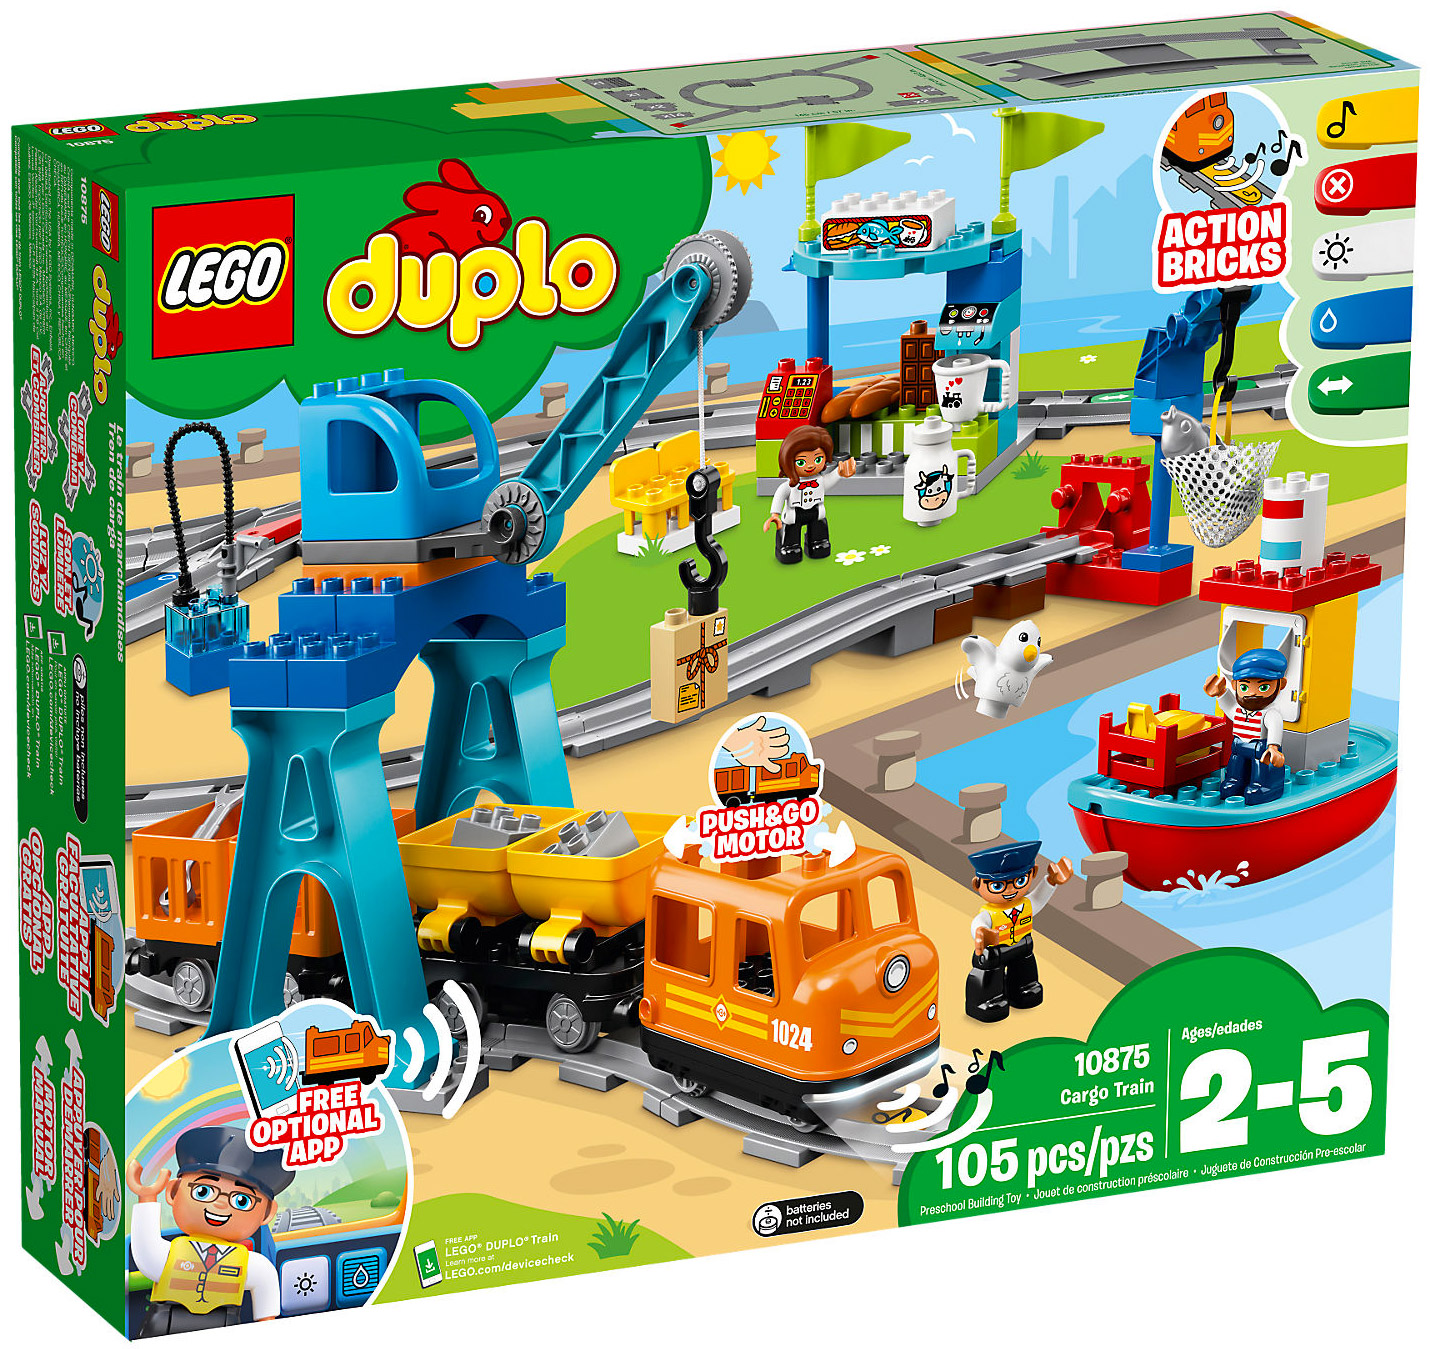 Duplo - Le Train des Chiffres LEGO : Comparateur, Avis, Prix